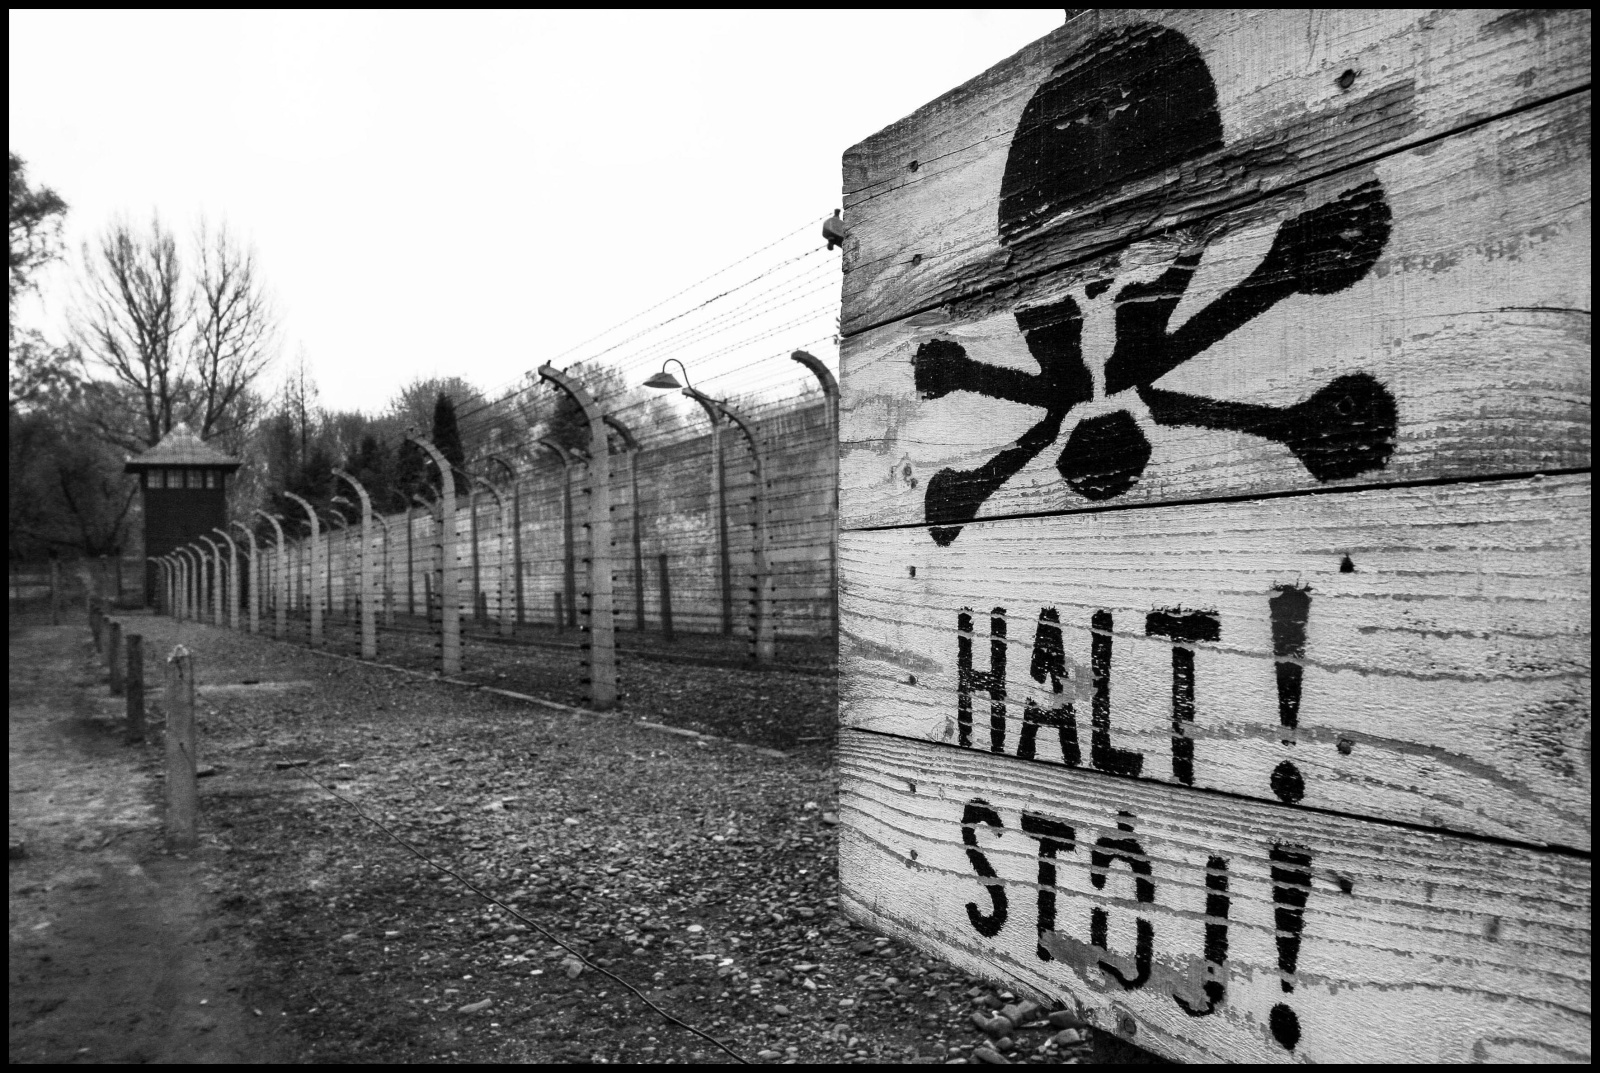 Il campo di concentramento di Auschwitz fu reso operativo dal 14 giugno 1940 ed è stato un vasto complesso di campi di concentramento e di lavoro situato nelle vicinanze della cittadina polacca di Oświęcim dove morirono  circa 70 000 persone.